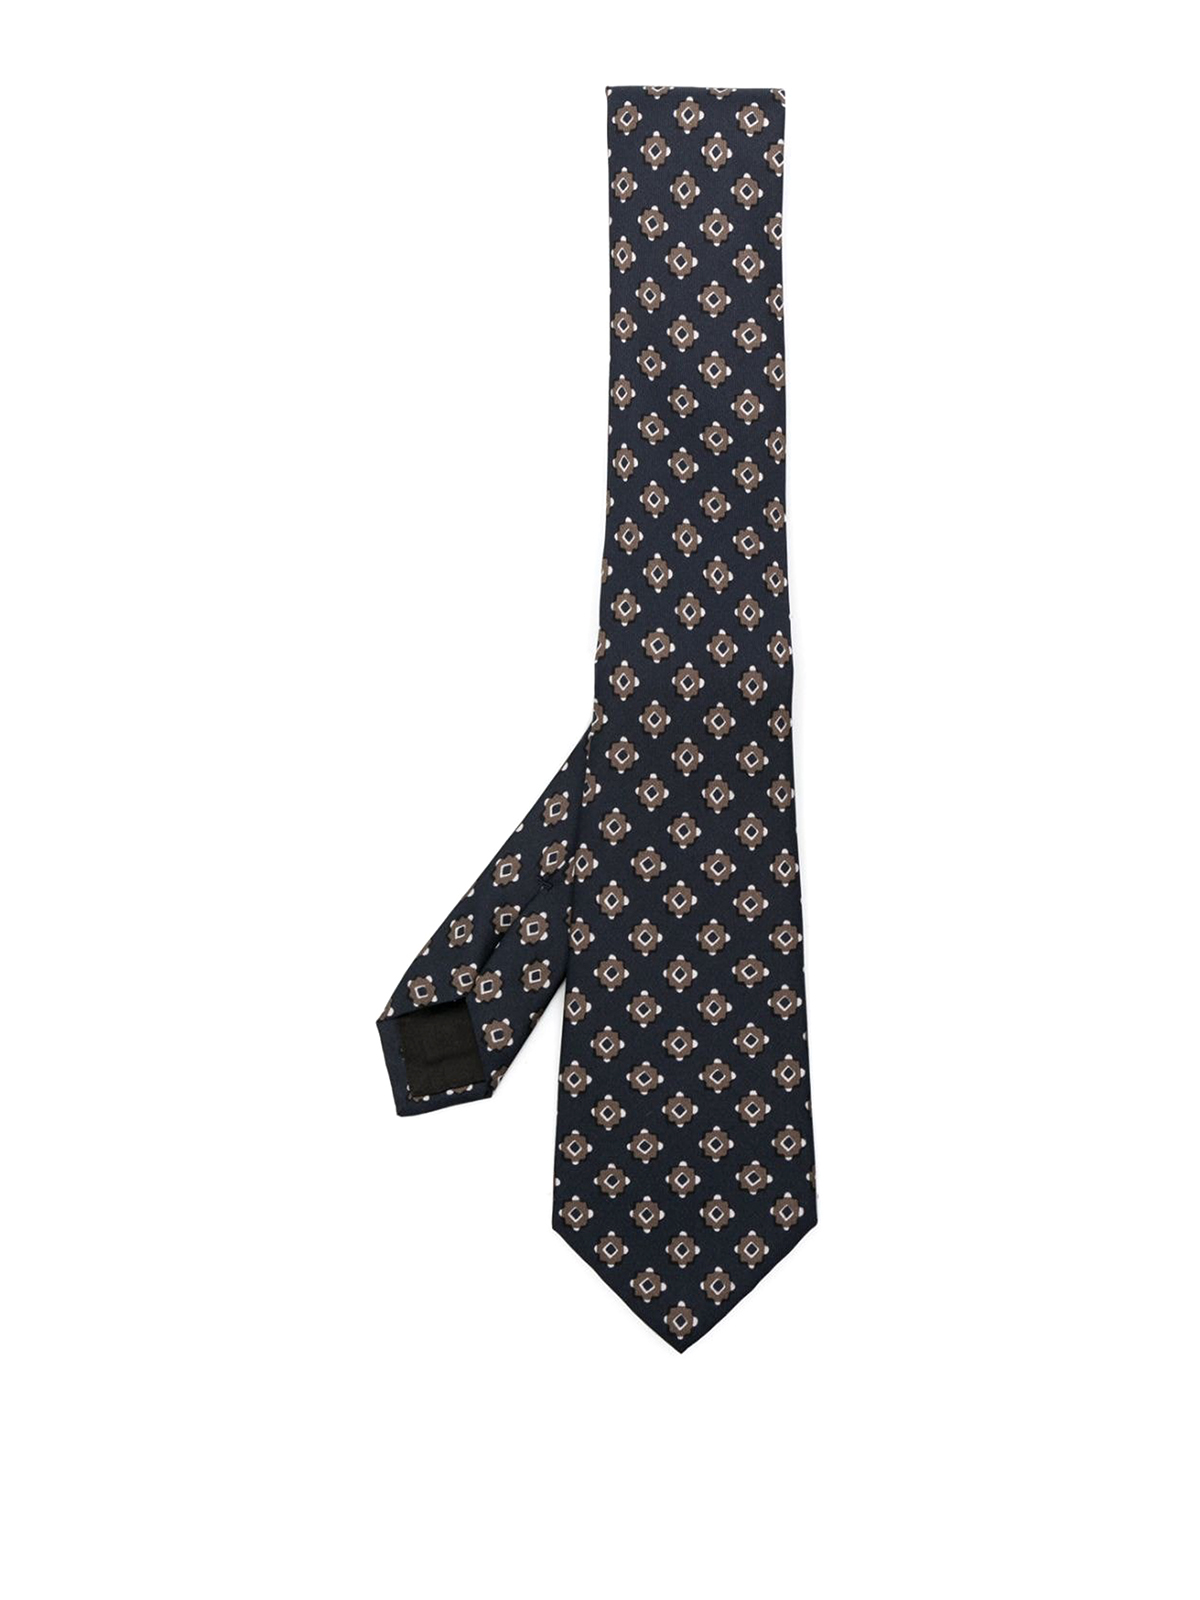 Giorgio Armani Tie In Black